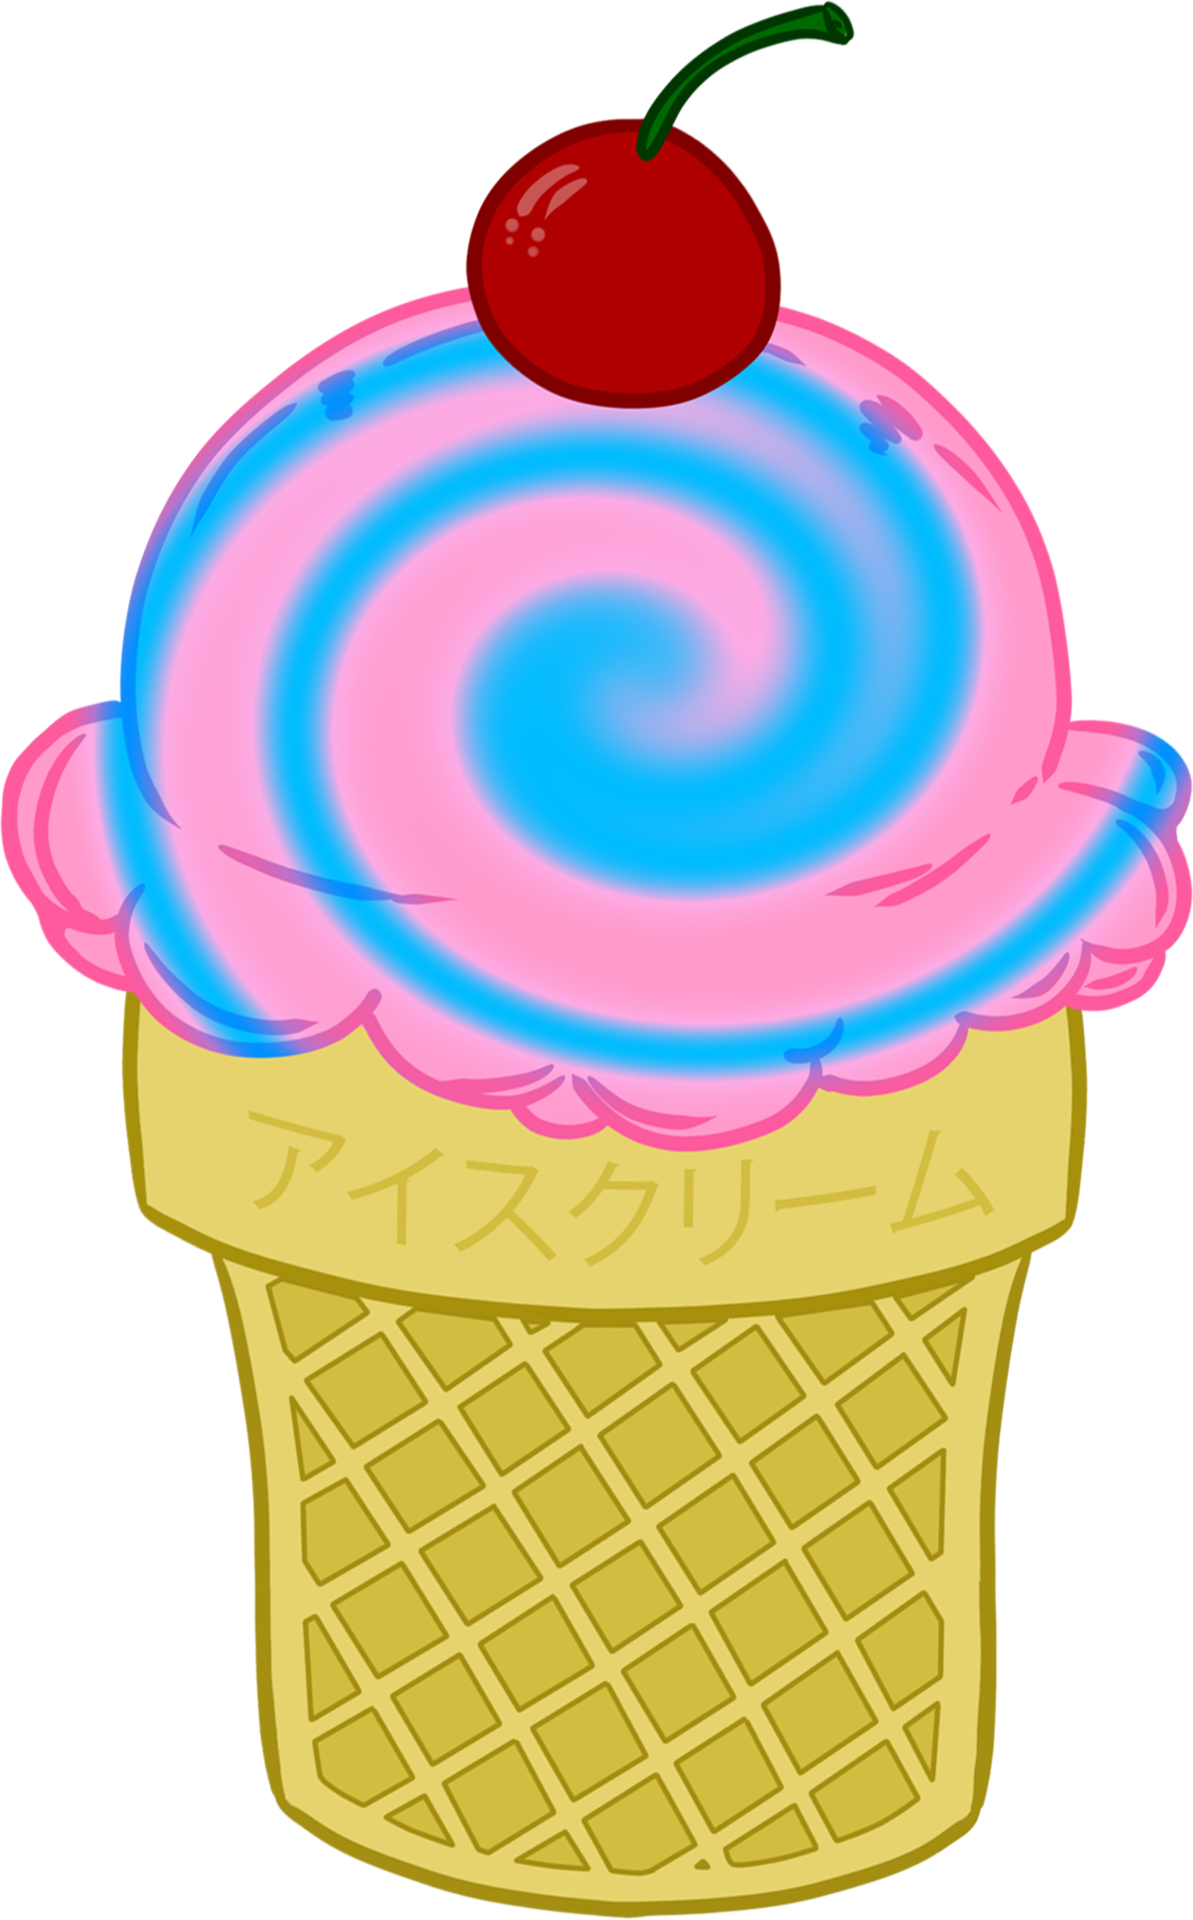 Icecream Icecream Cone Ice Cream Ice Cream Cone Vanilla - Ice Cream Cone (1193x1920)